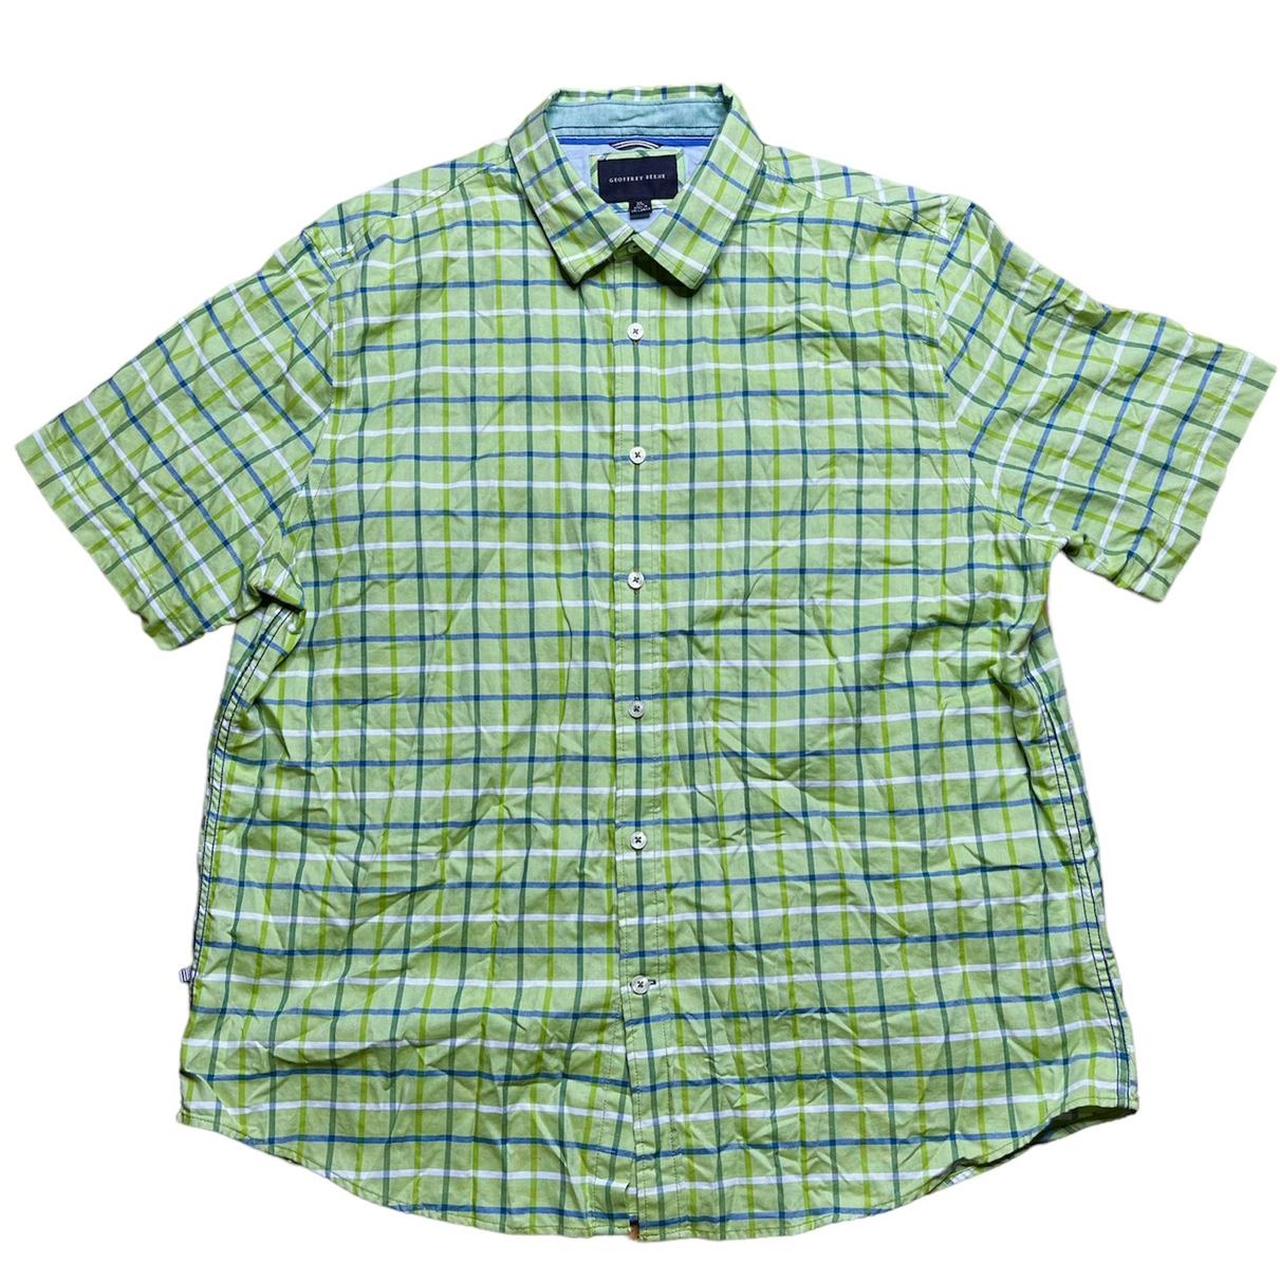 Geoffrey Beene Men's Green and Blue Shirt | Depop